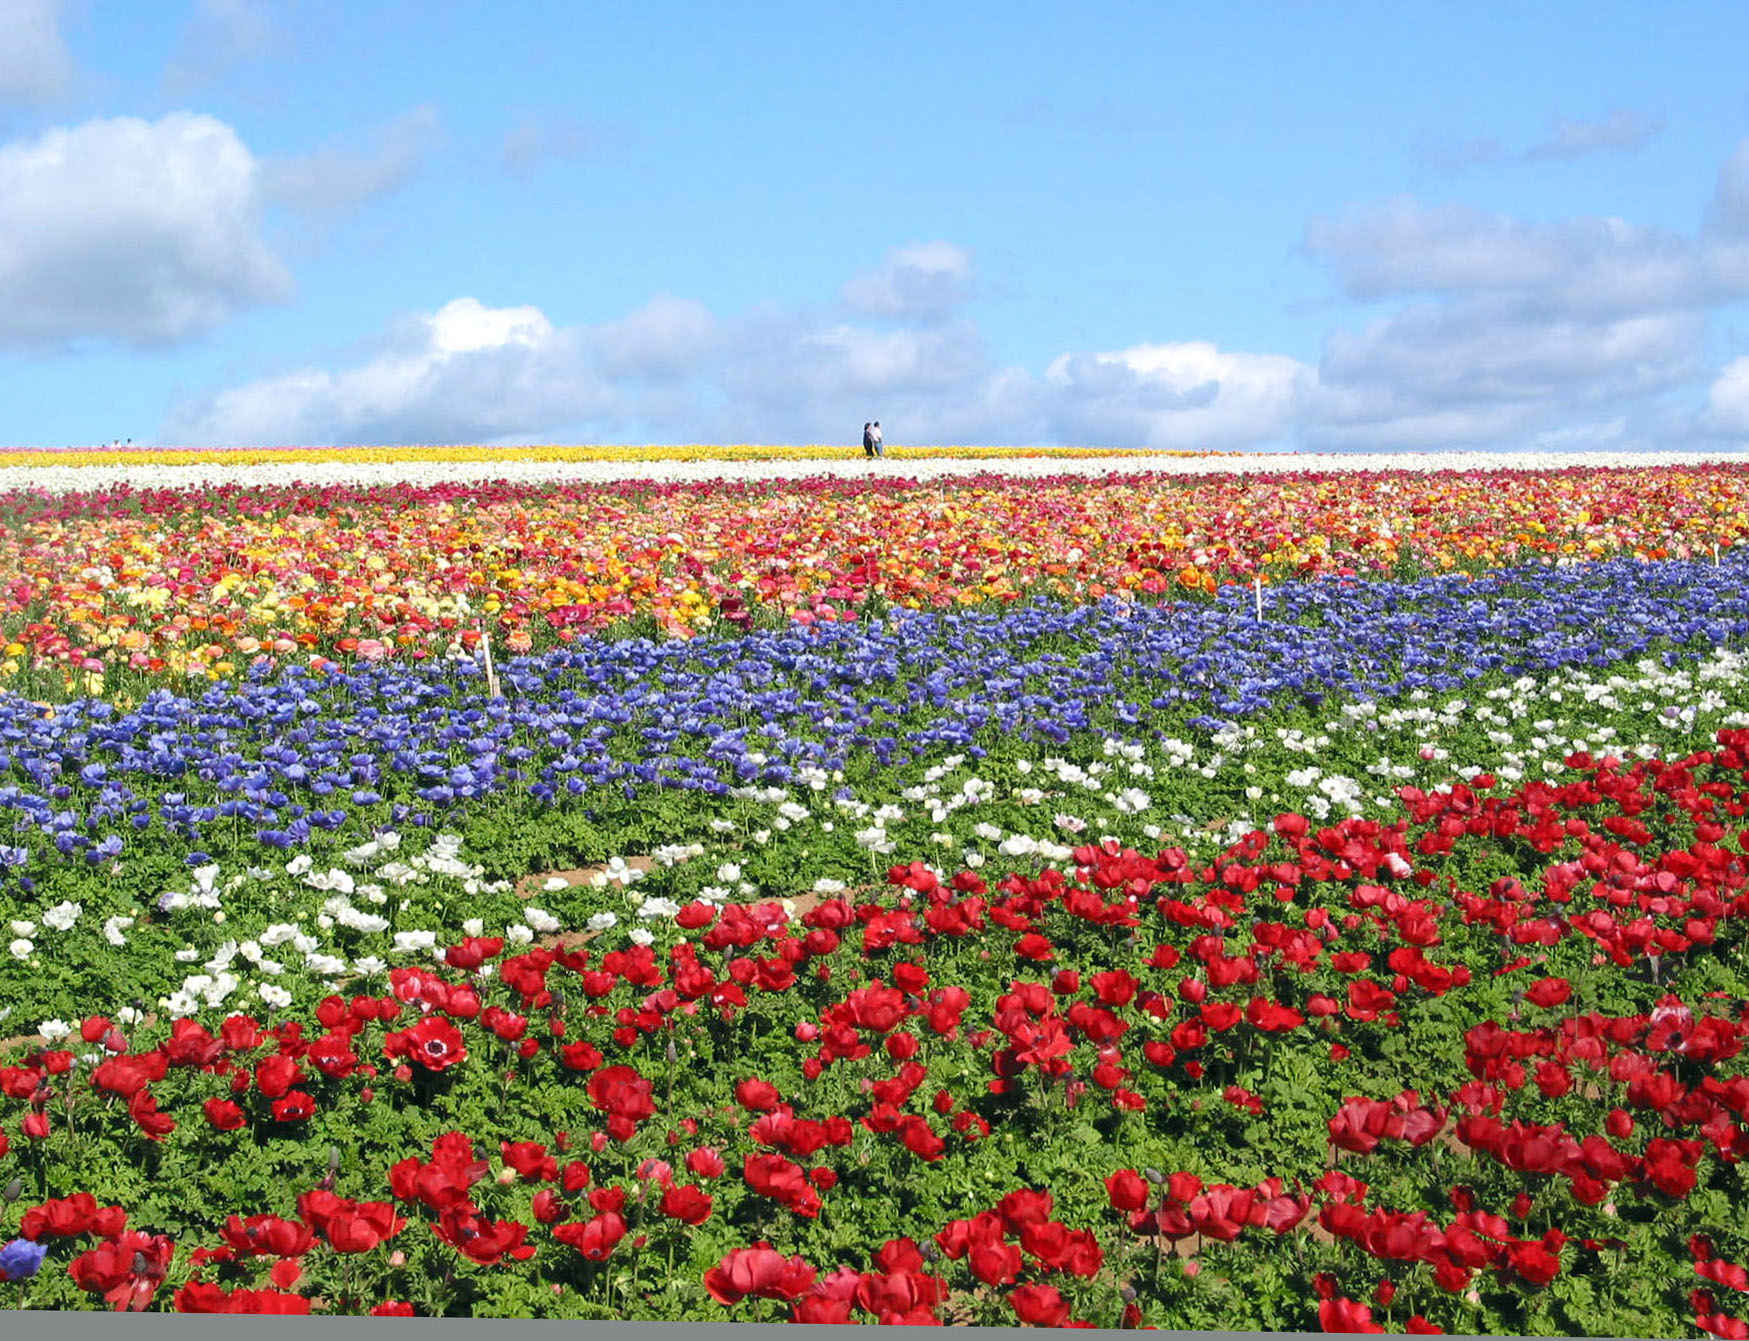 The Carlsbad Flower Fields